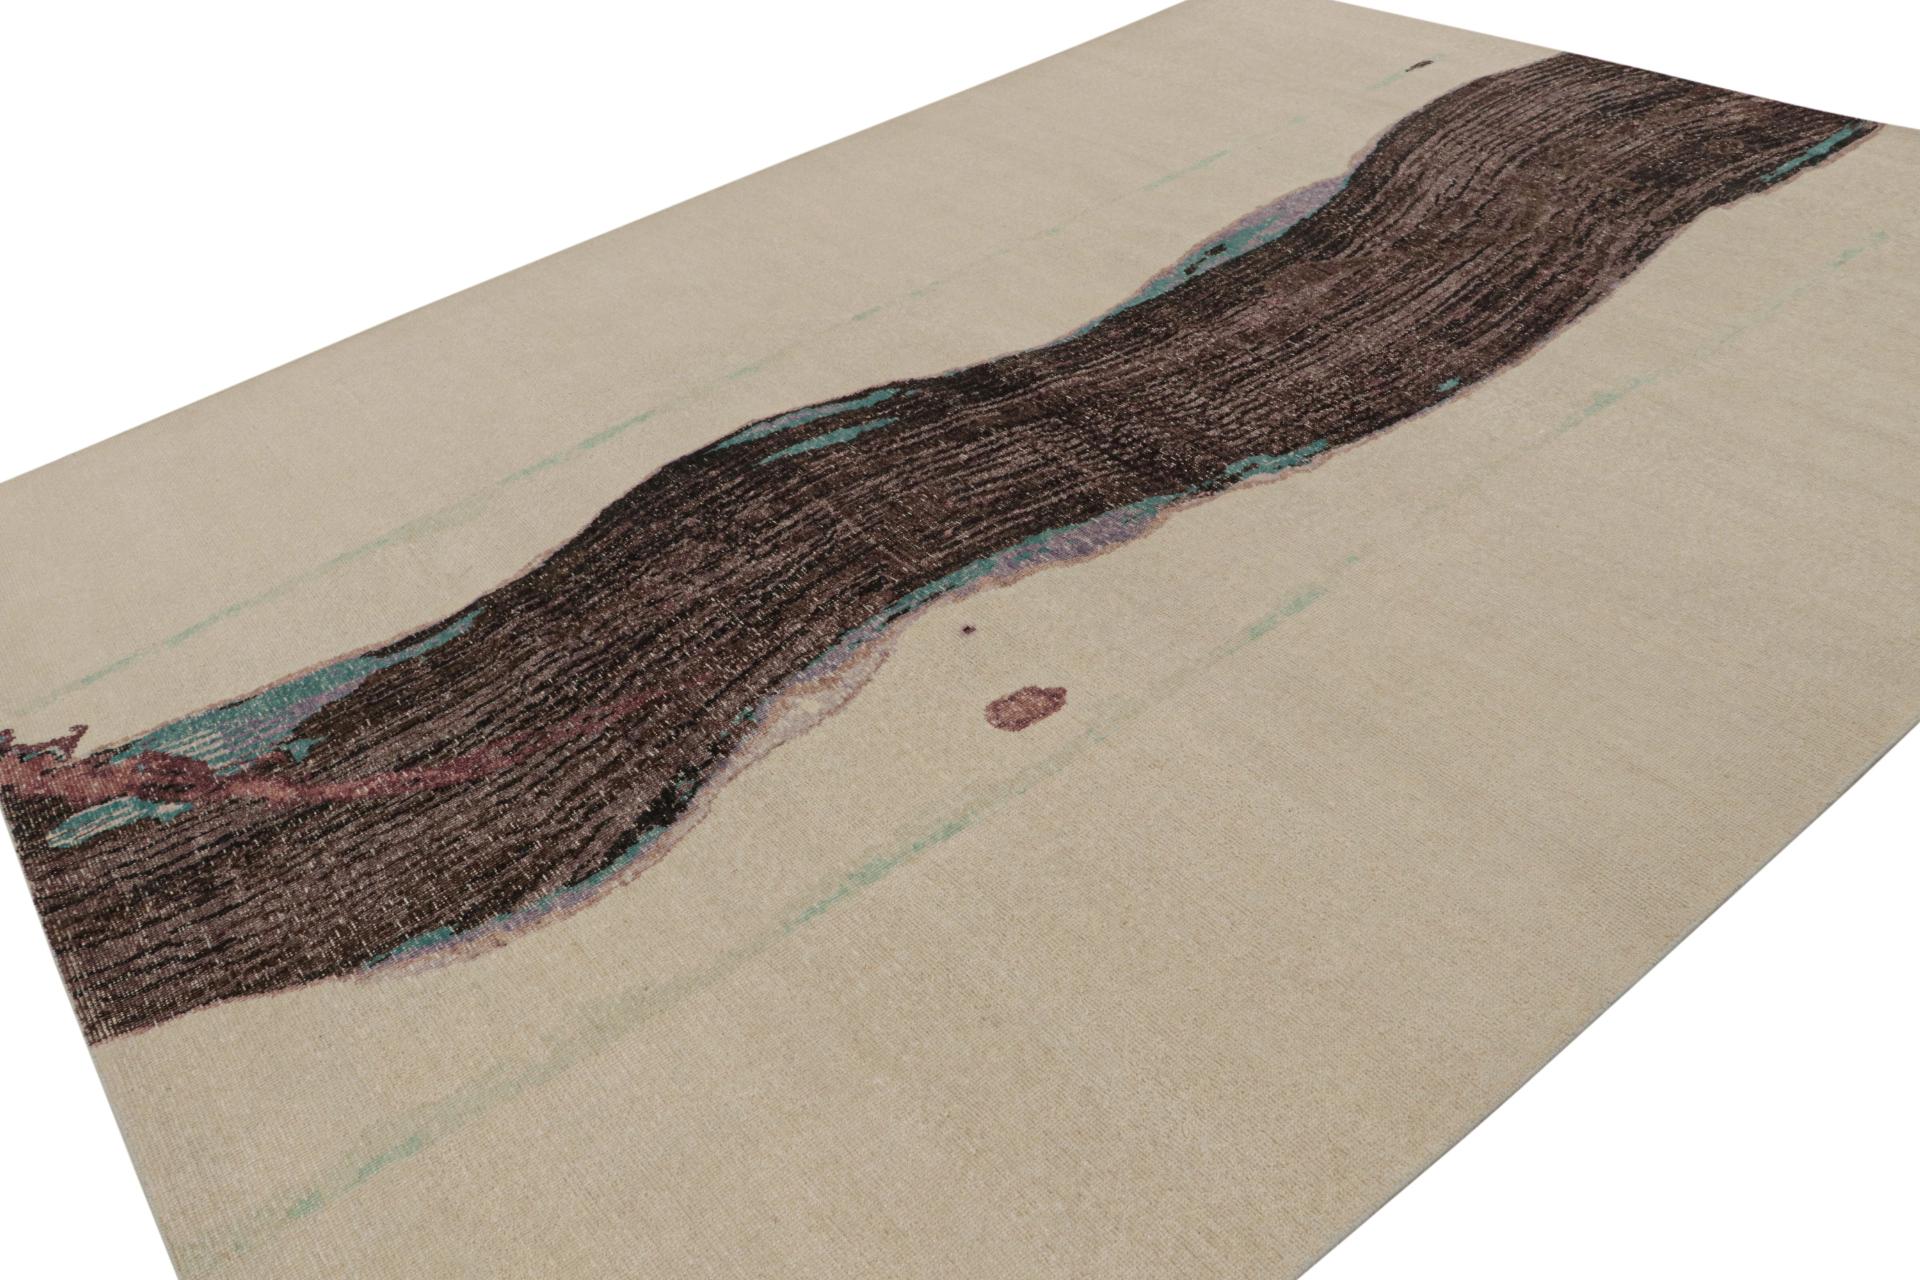 Dieser 9x12 große Teppich ist eine kühne Neuheit in der Homage Collection'S von Rug & Kilim. Dieses aus Wolle handgeknüpfte Stück verbindet die Sensibilität für abstrakte expressionistische Kunst mit unserem einzigartigen Rustic Modern